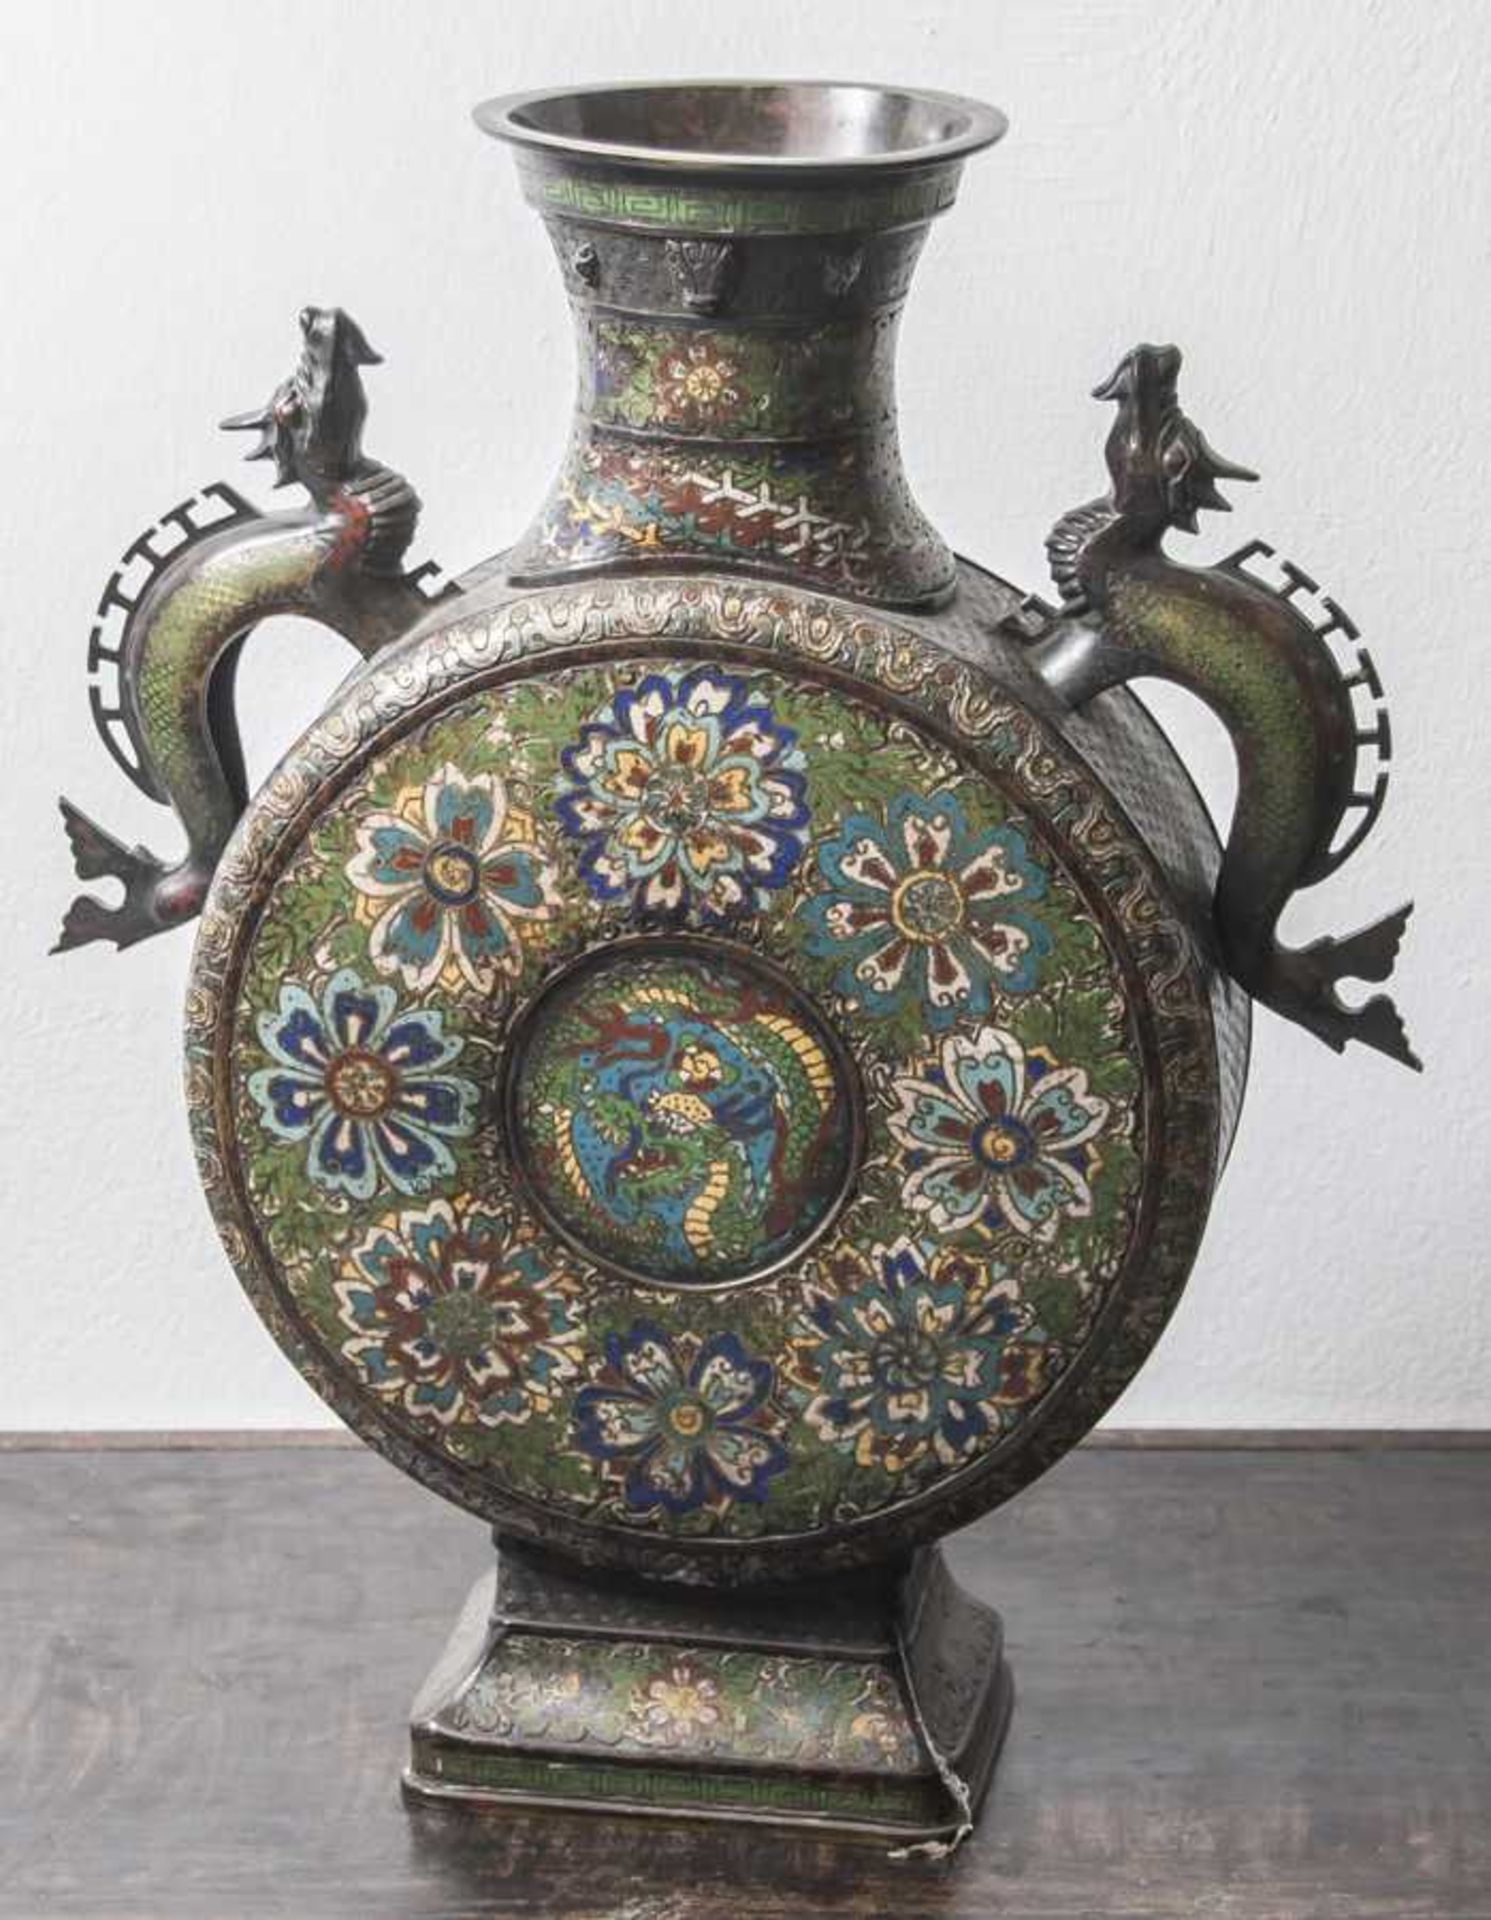 Große Bodenvase, China, wohl 19. Jahrhundert, Bronze, archaischer Stil, inPilgerflaschenform, mit